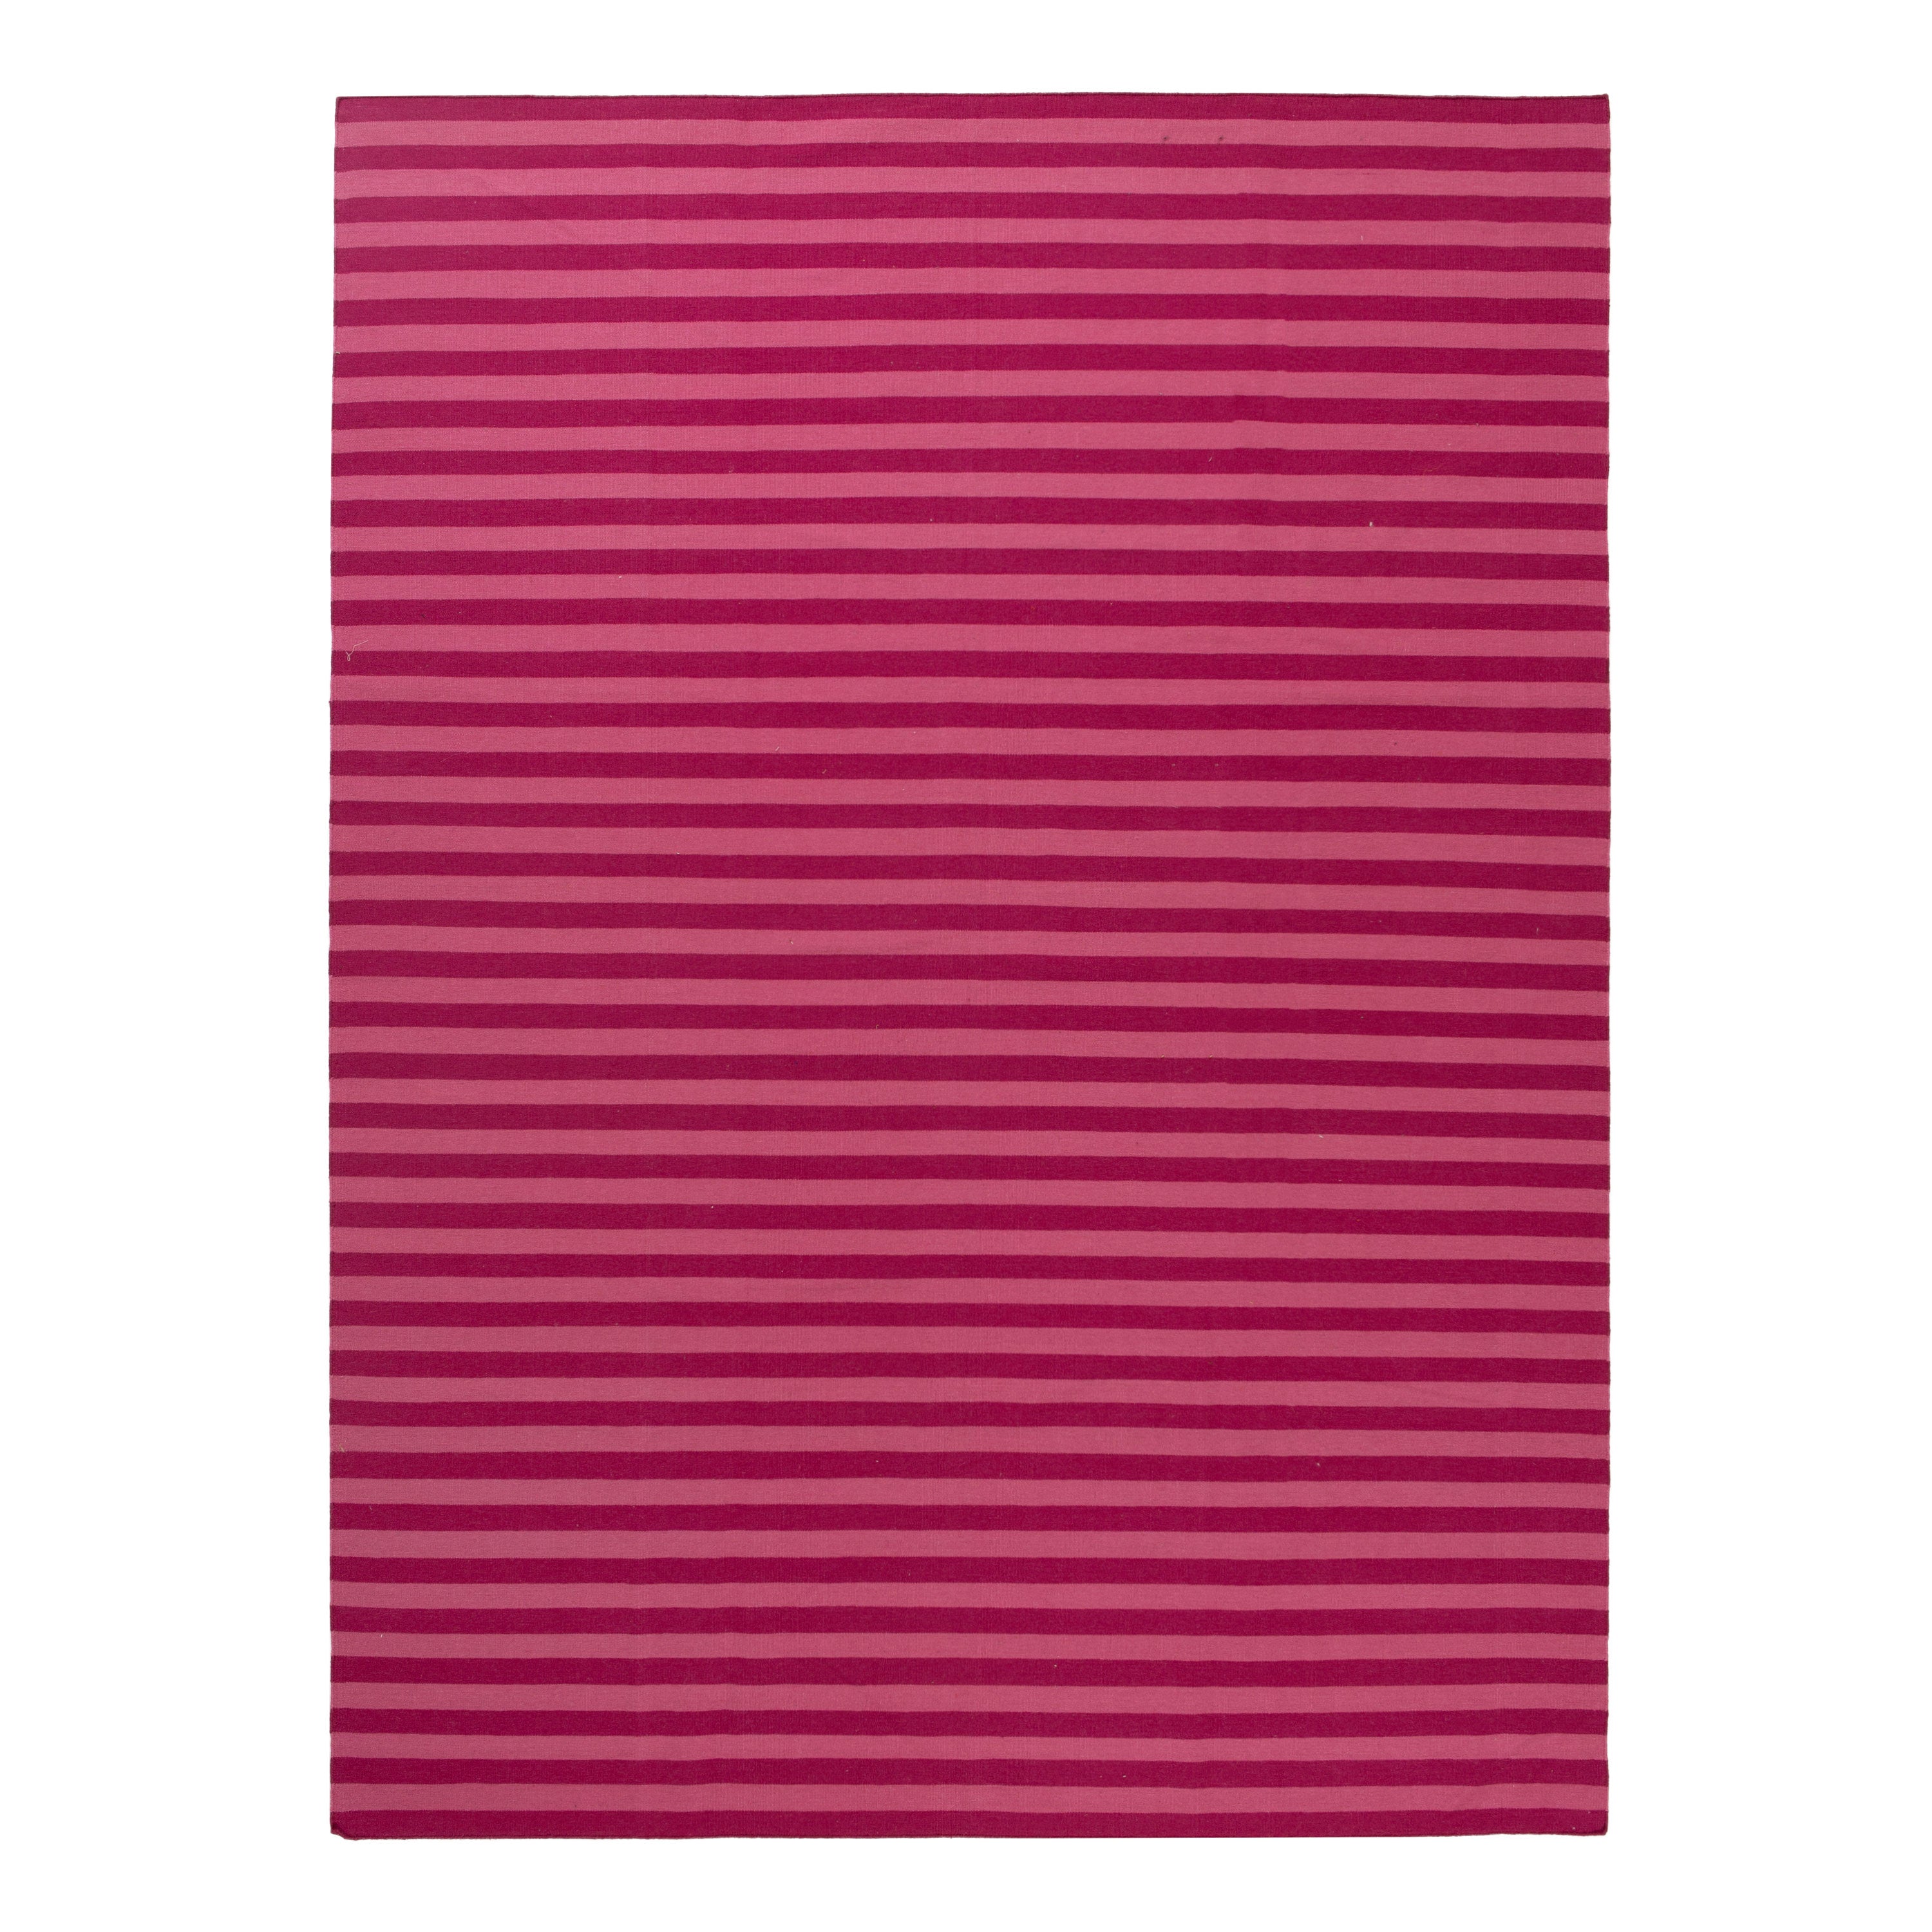 Pink Flatweave Wool Rug - 8'6" x 11'6"